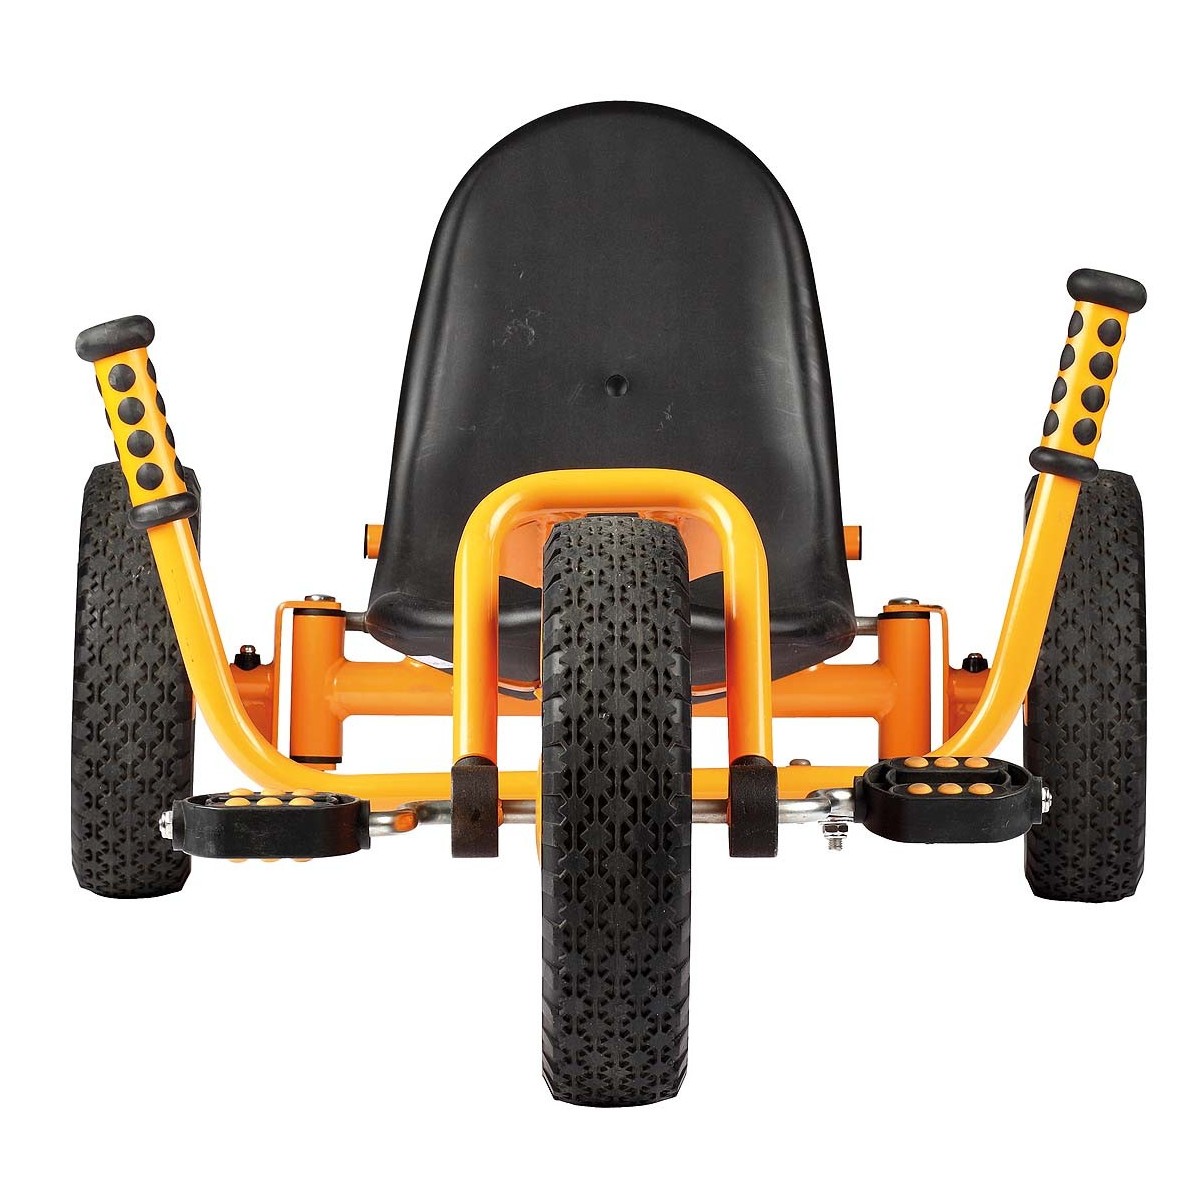 Rider Top Trike - 3 - Le Rider Top Trike est unique pour tous les terrains !
Avec son siège bas et le mécanisme de direction de